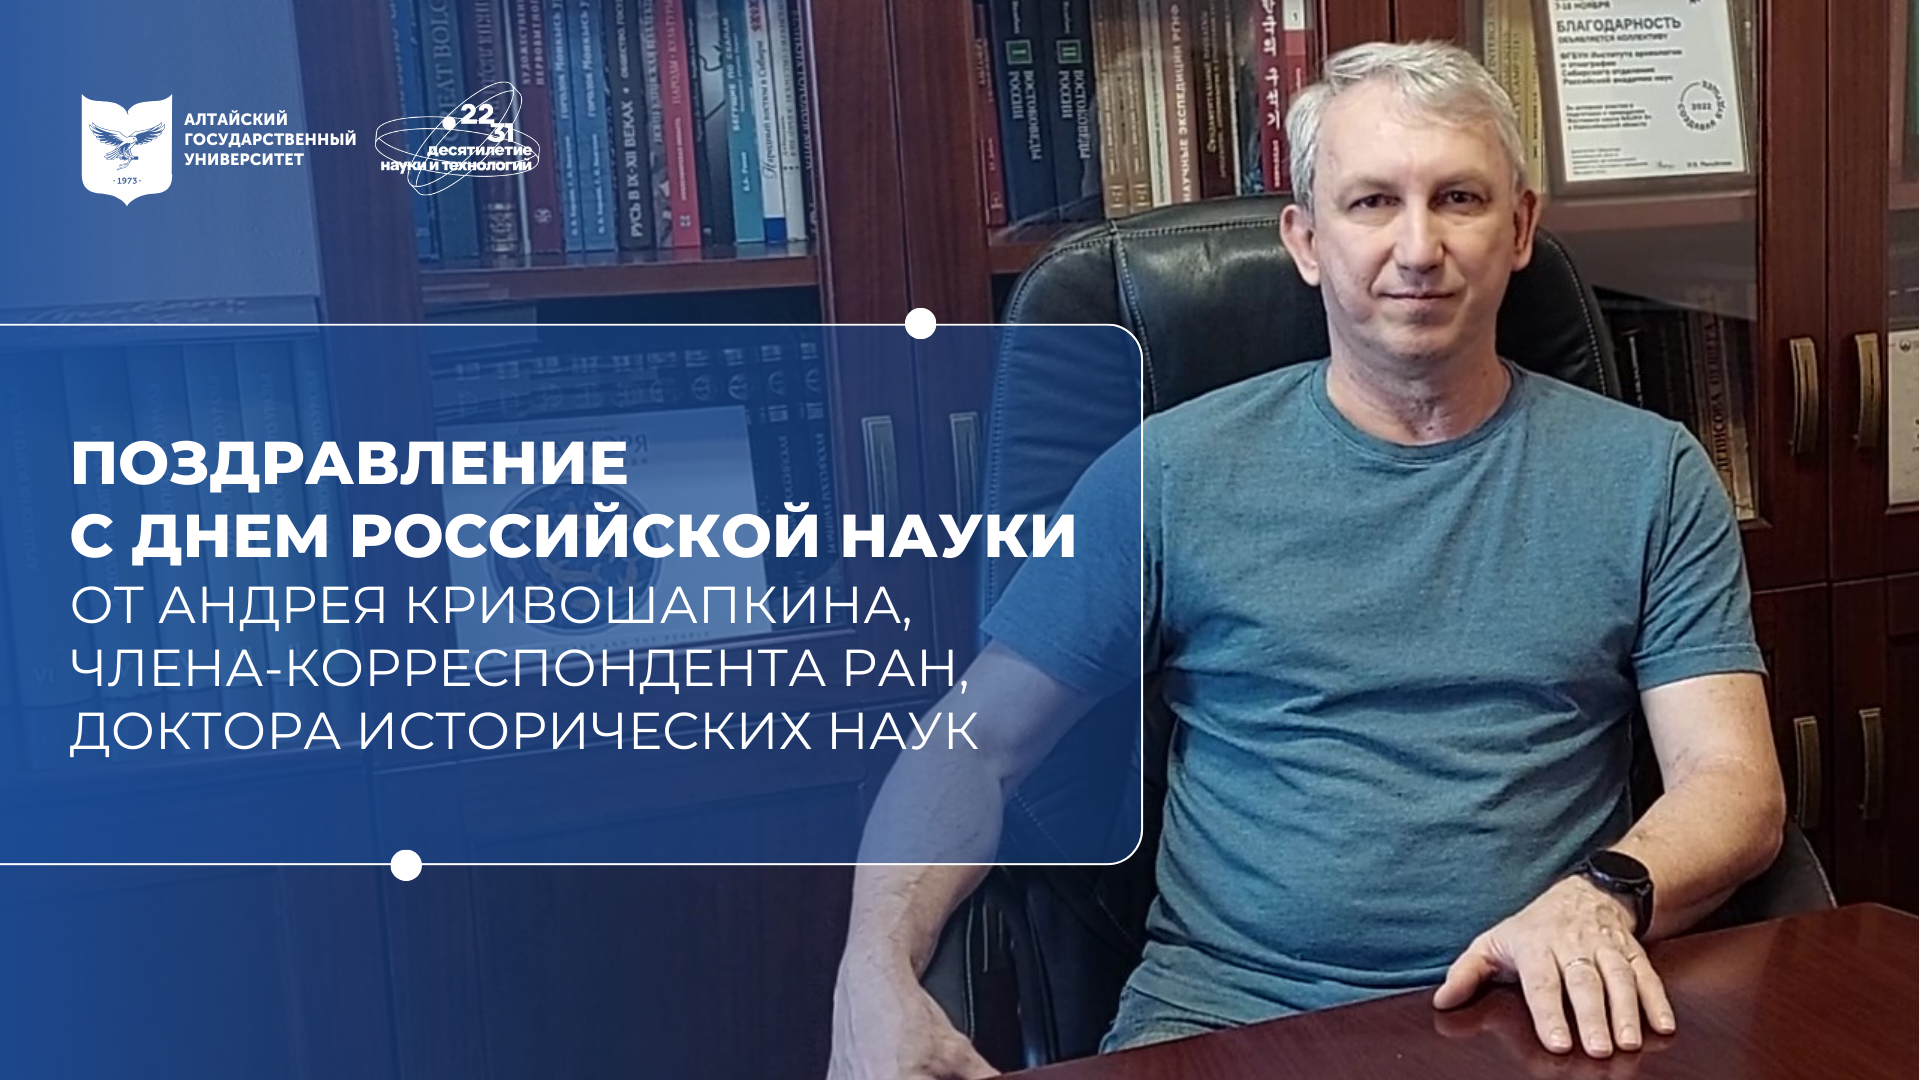 Поздравление с Днём российской науки | Андрей Кривошапкин, Россия